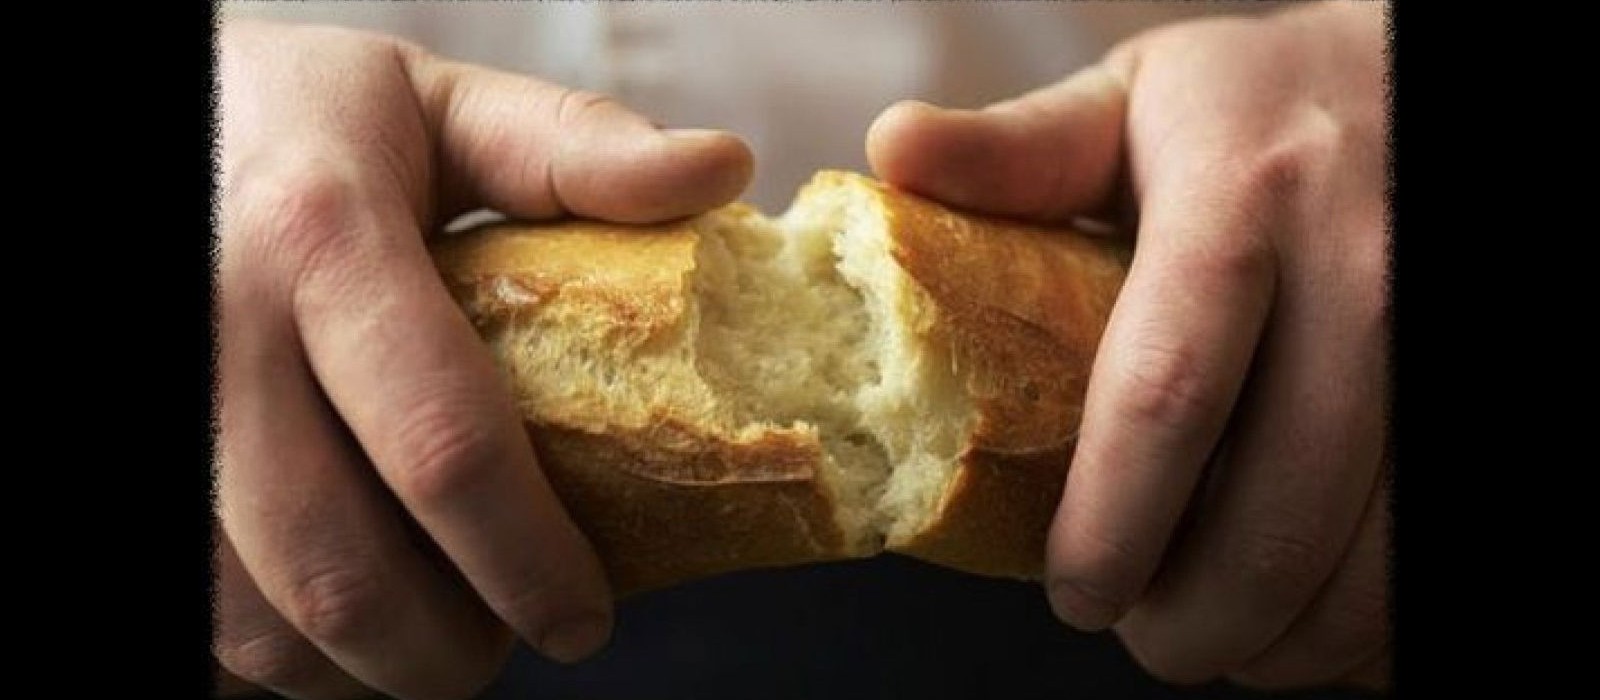 clip art jesus breaking bread - photo #46